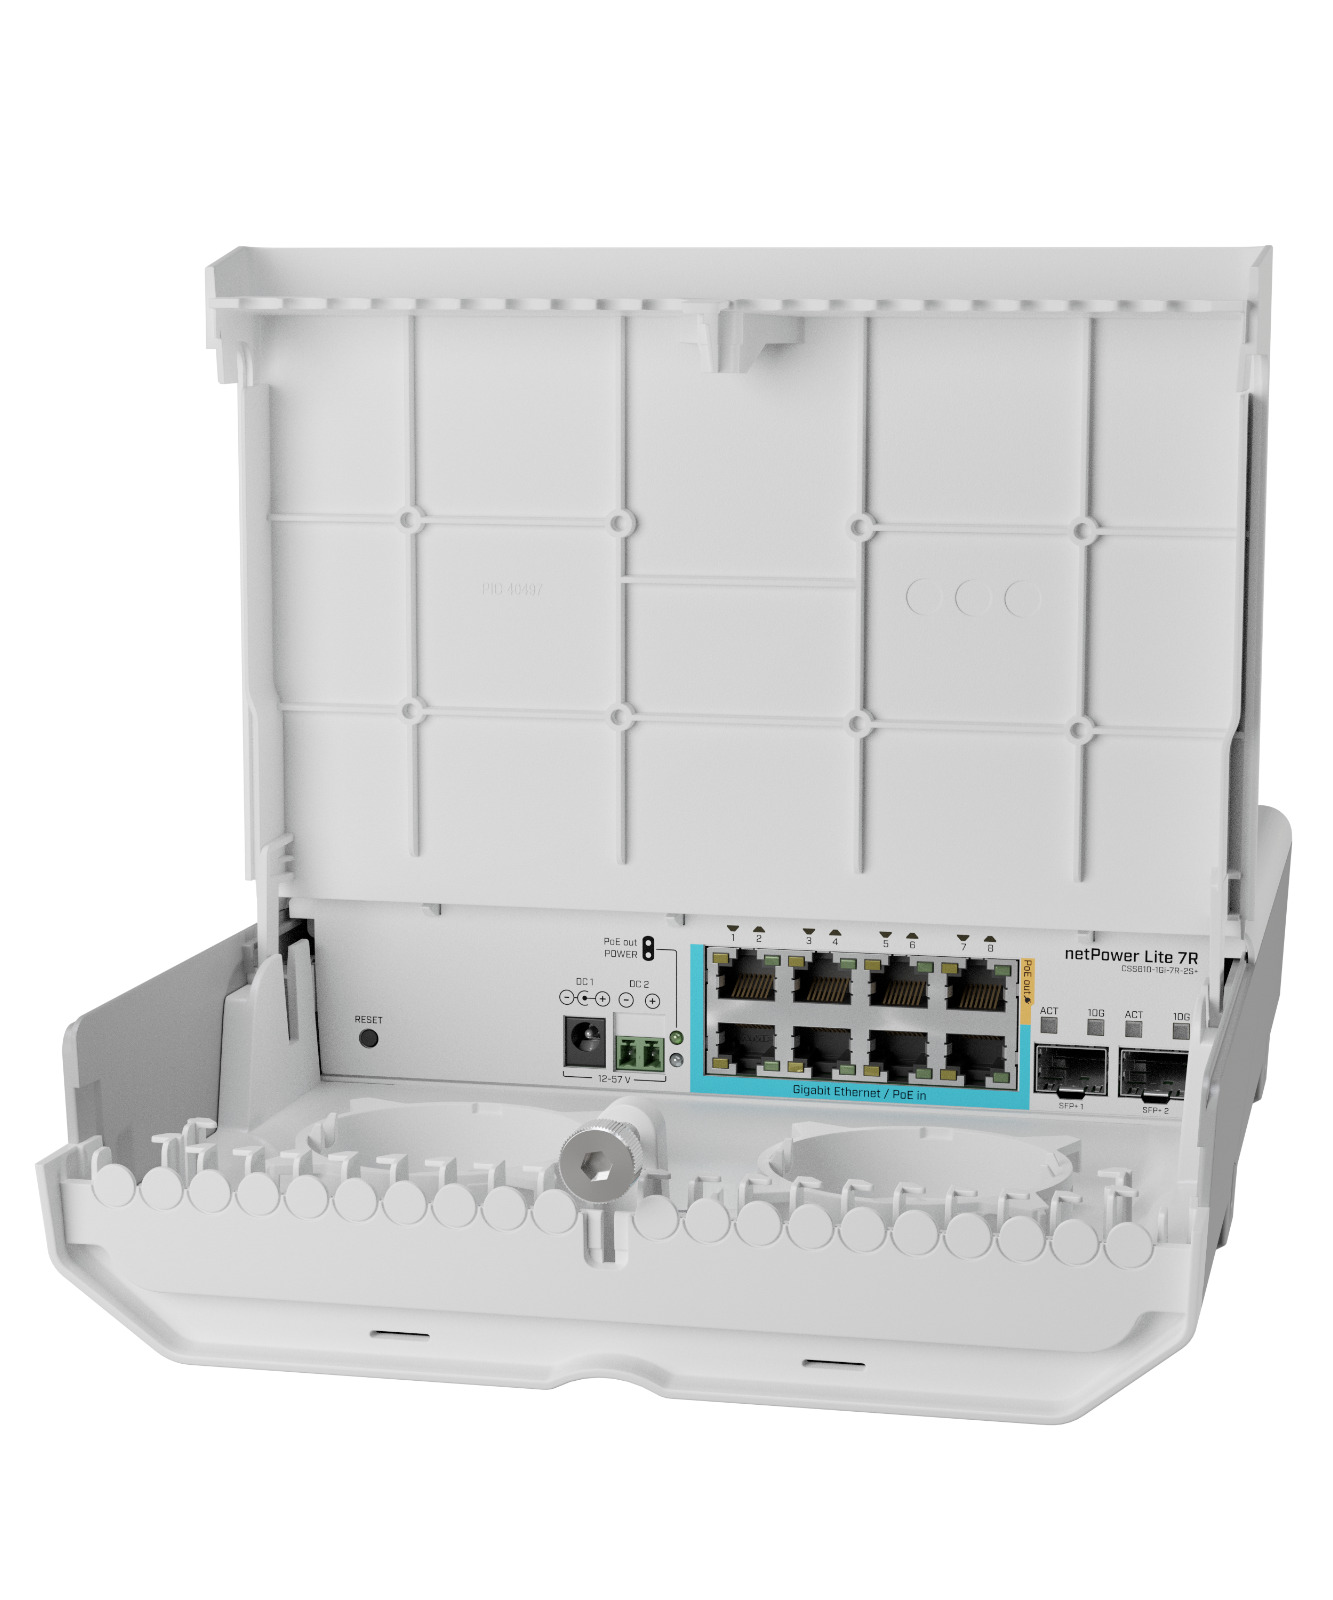 MikroTik Cloud Smart Switch netPower Lite 7R CSS610-1GI-7R-2S+OUT, 8xGE, 2xSFP+